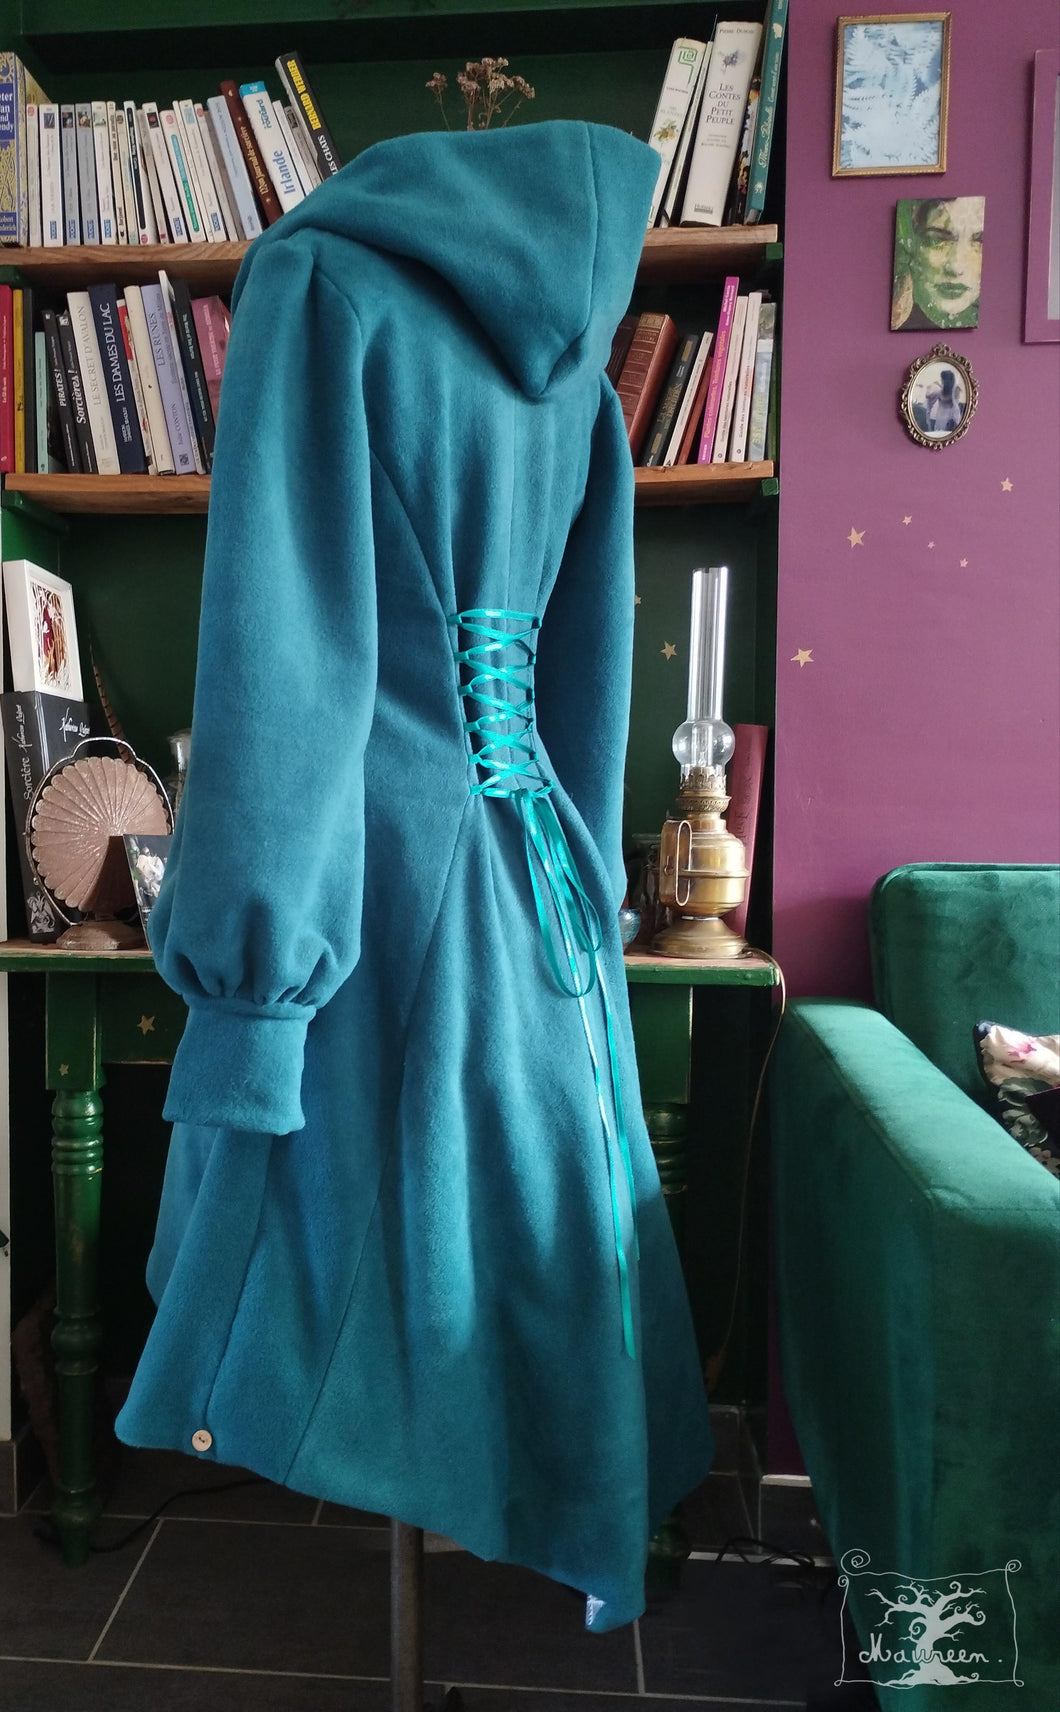 Manteau de contes de fées polaire bleu canard créatrice Maureen 